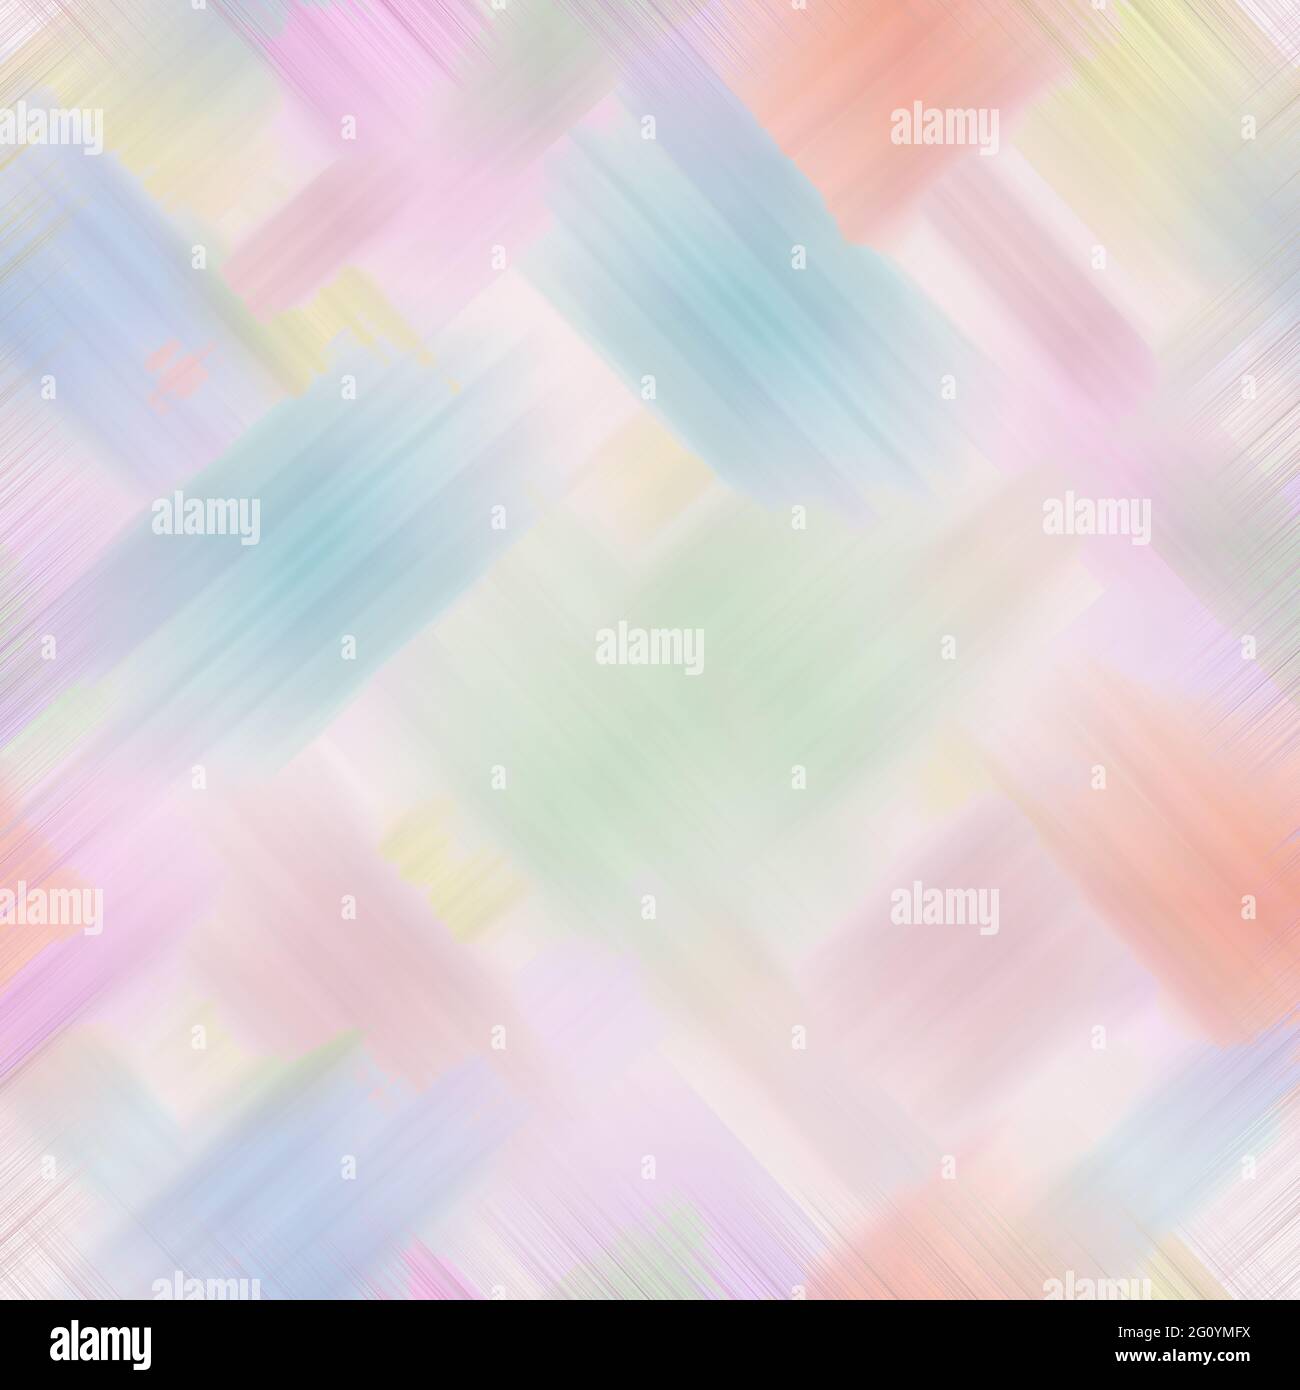 Mehrfarbiger abstrakter Hintergrund. Schablone mit digitaler Imitation von pastellrosa, blau, orange, grünen Pinselstrichen. Sanftes, zartes Frühlingsbild Stockfoto